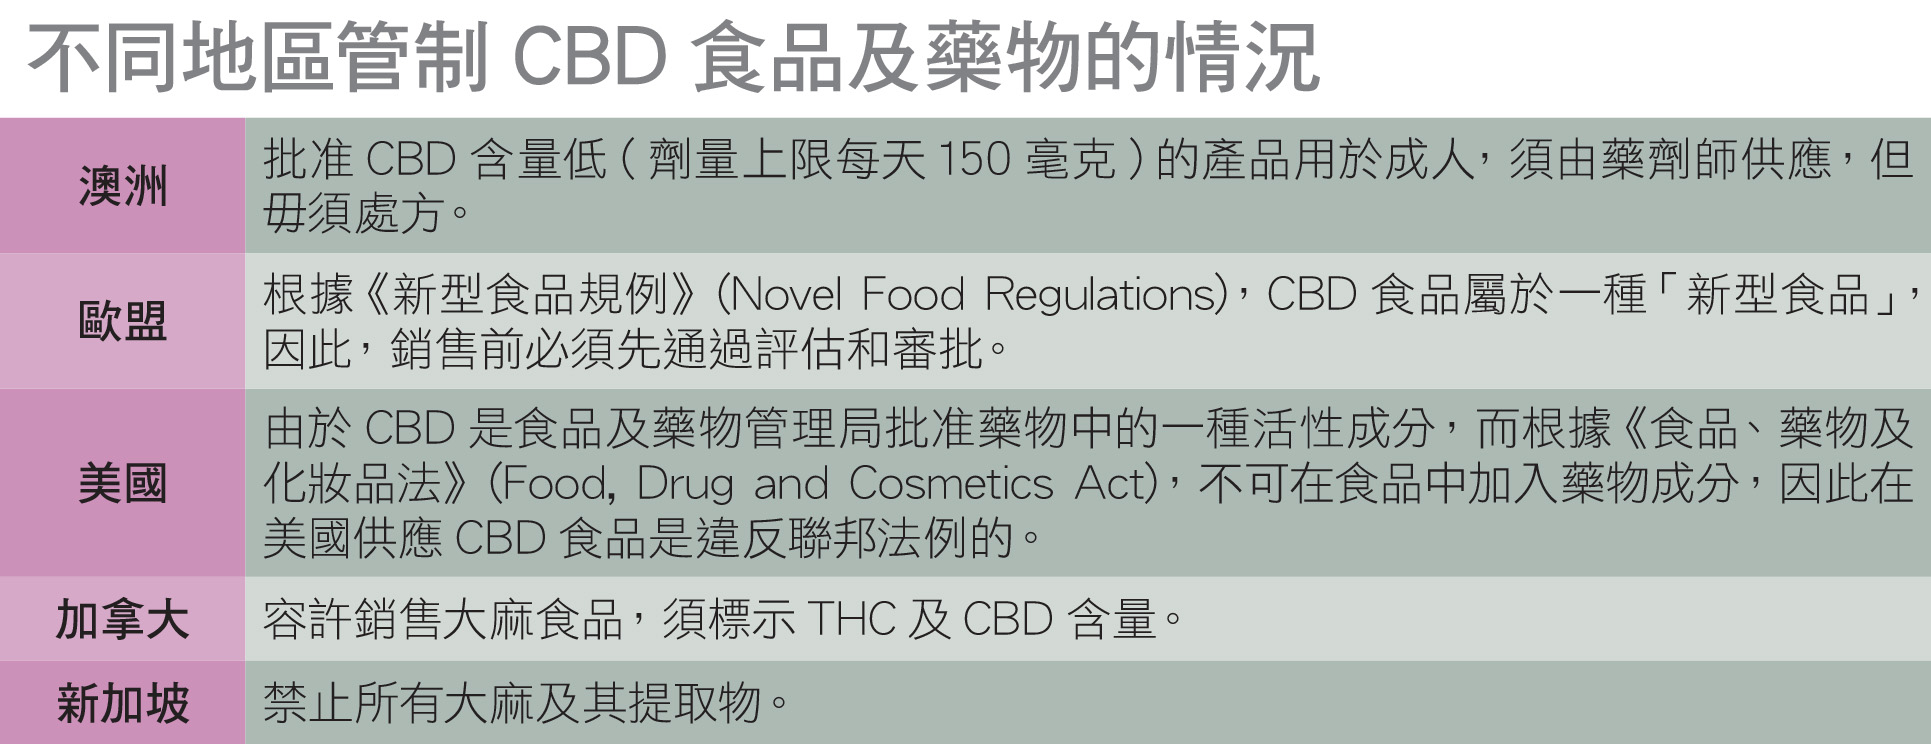 不同地区管制CBD食品及药物的情况